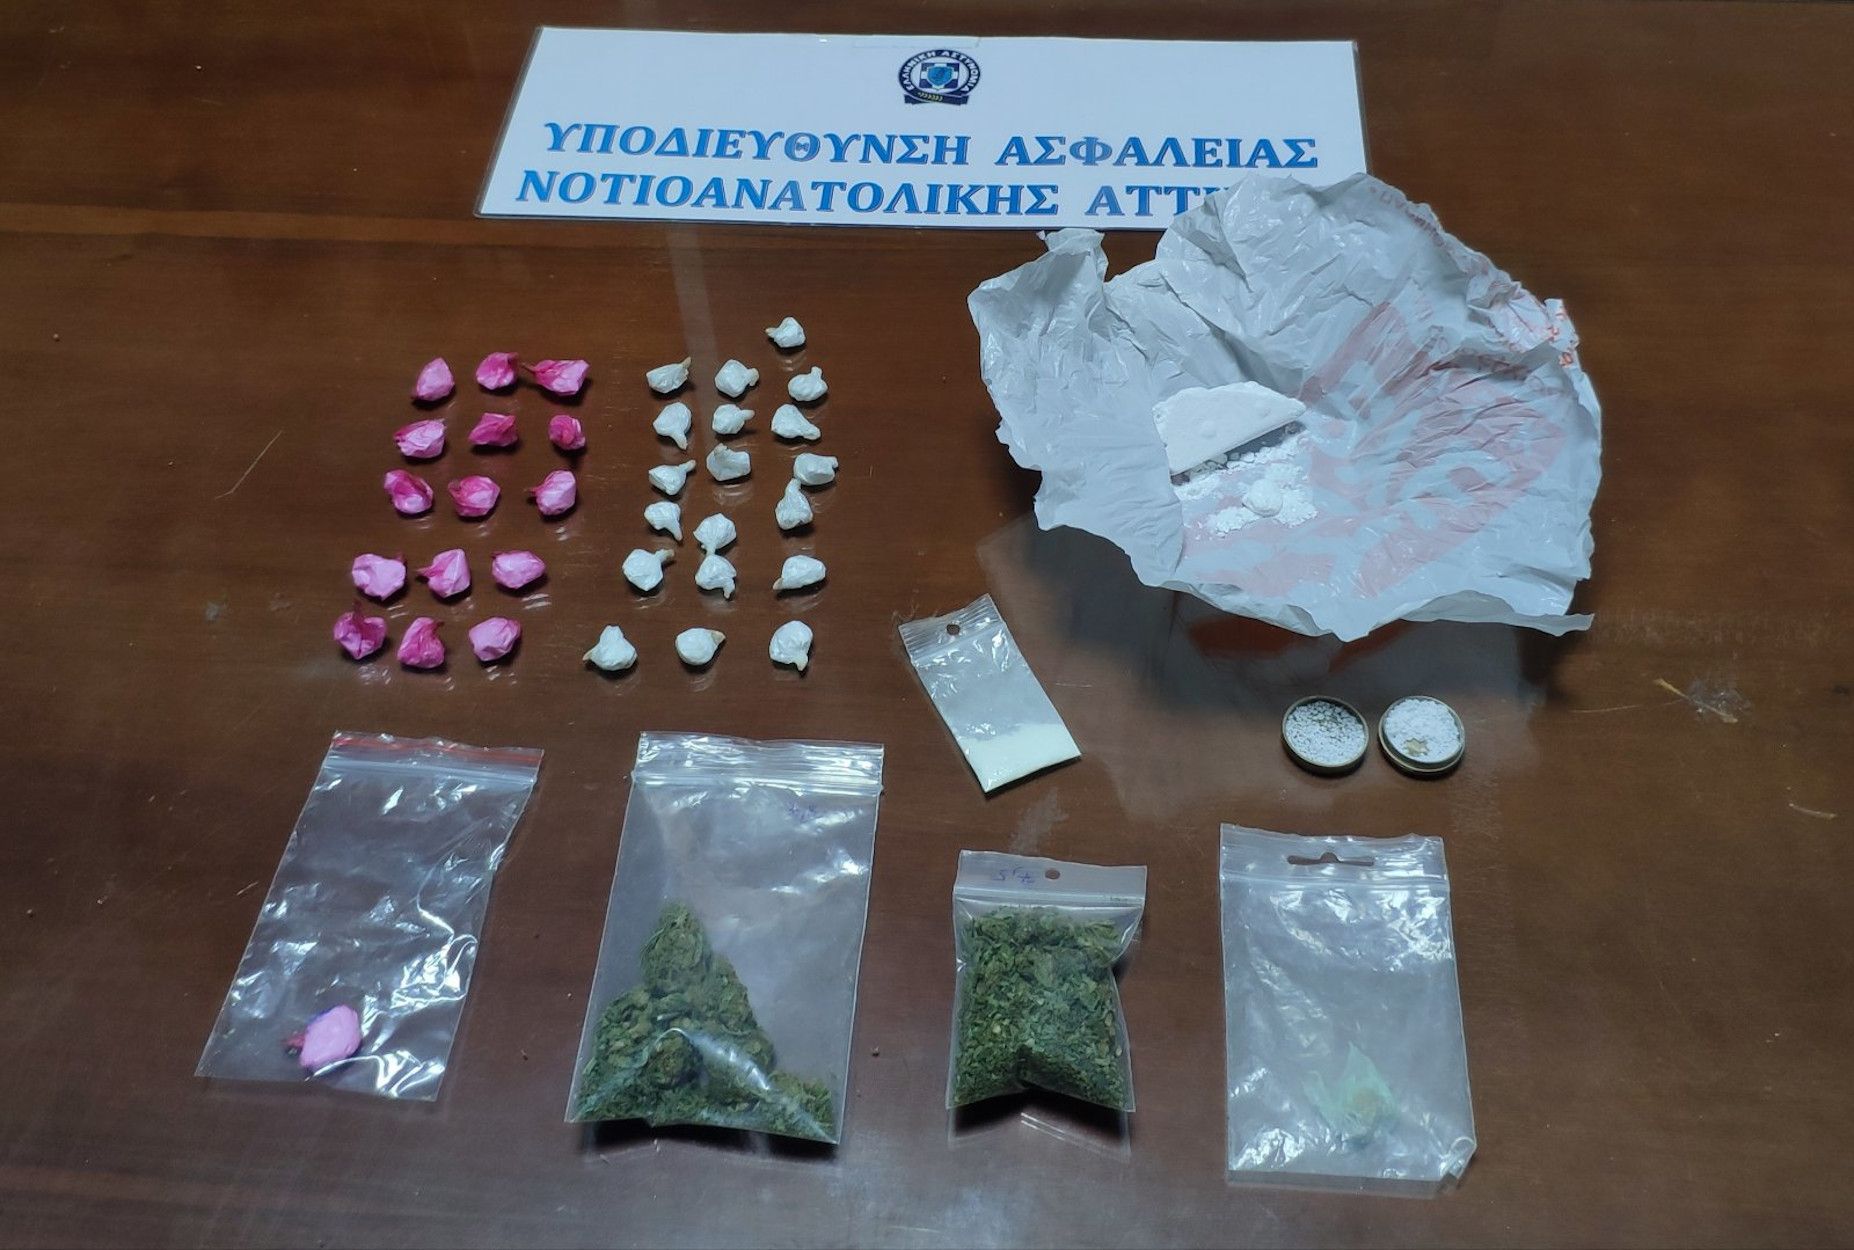 Γλυφάδα: Δύο συλλήψεις για κοκαΐνη και κάνναβη – Πως “τσάκωσαν” διακινητή και αγοραστή (pics)